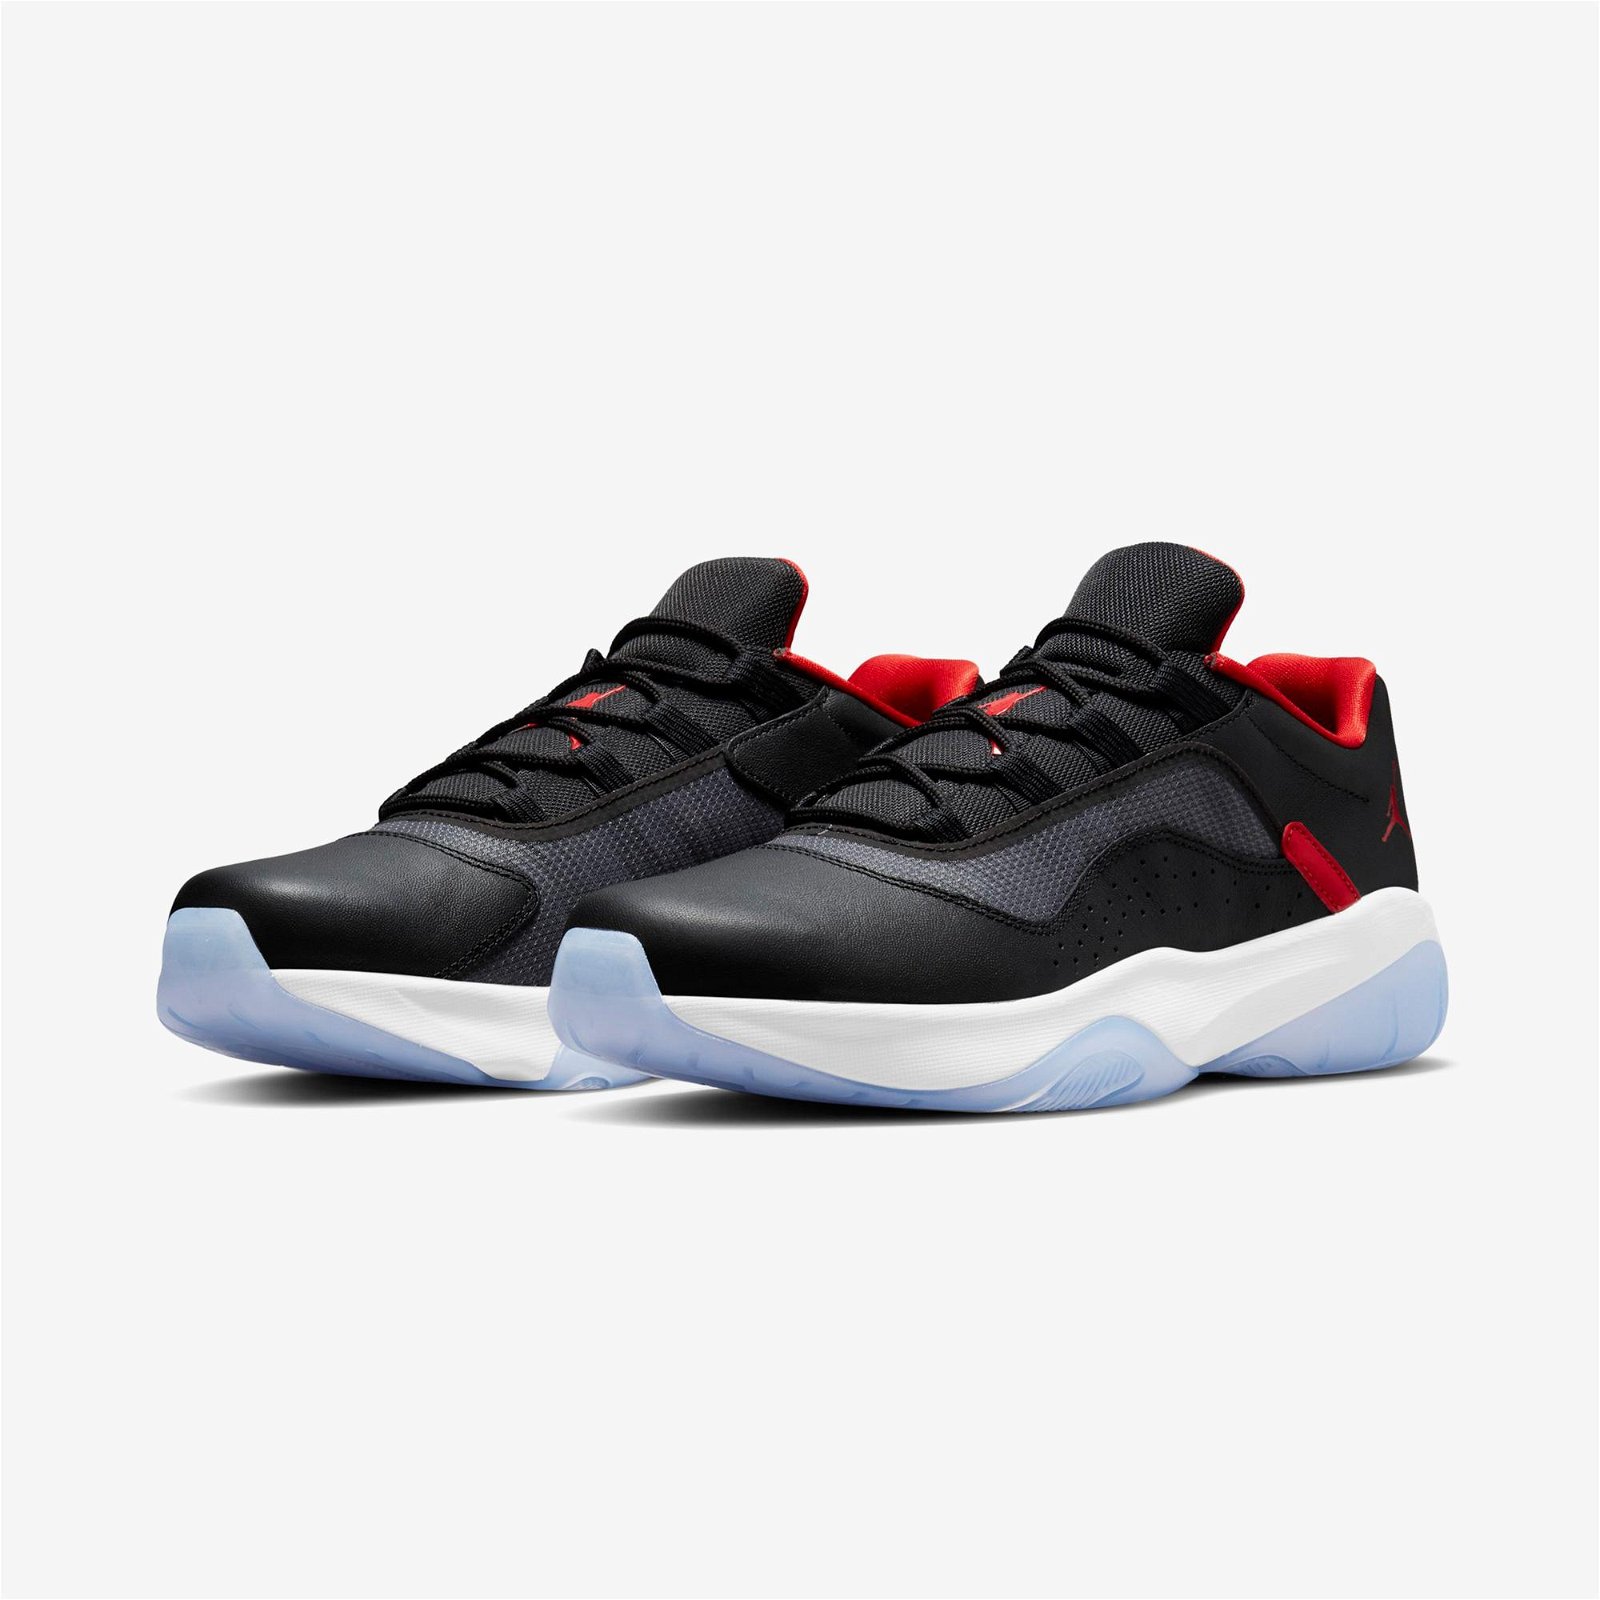 Air Jordan 11 Cmft Low Erkek Siyah-Beyaz-Kırmızı Spor Ayakkabı